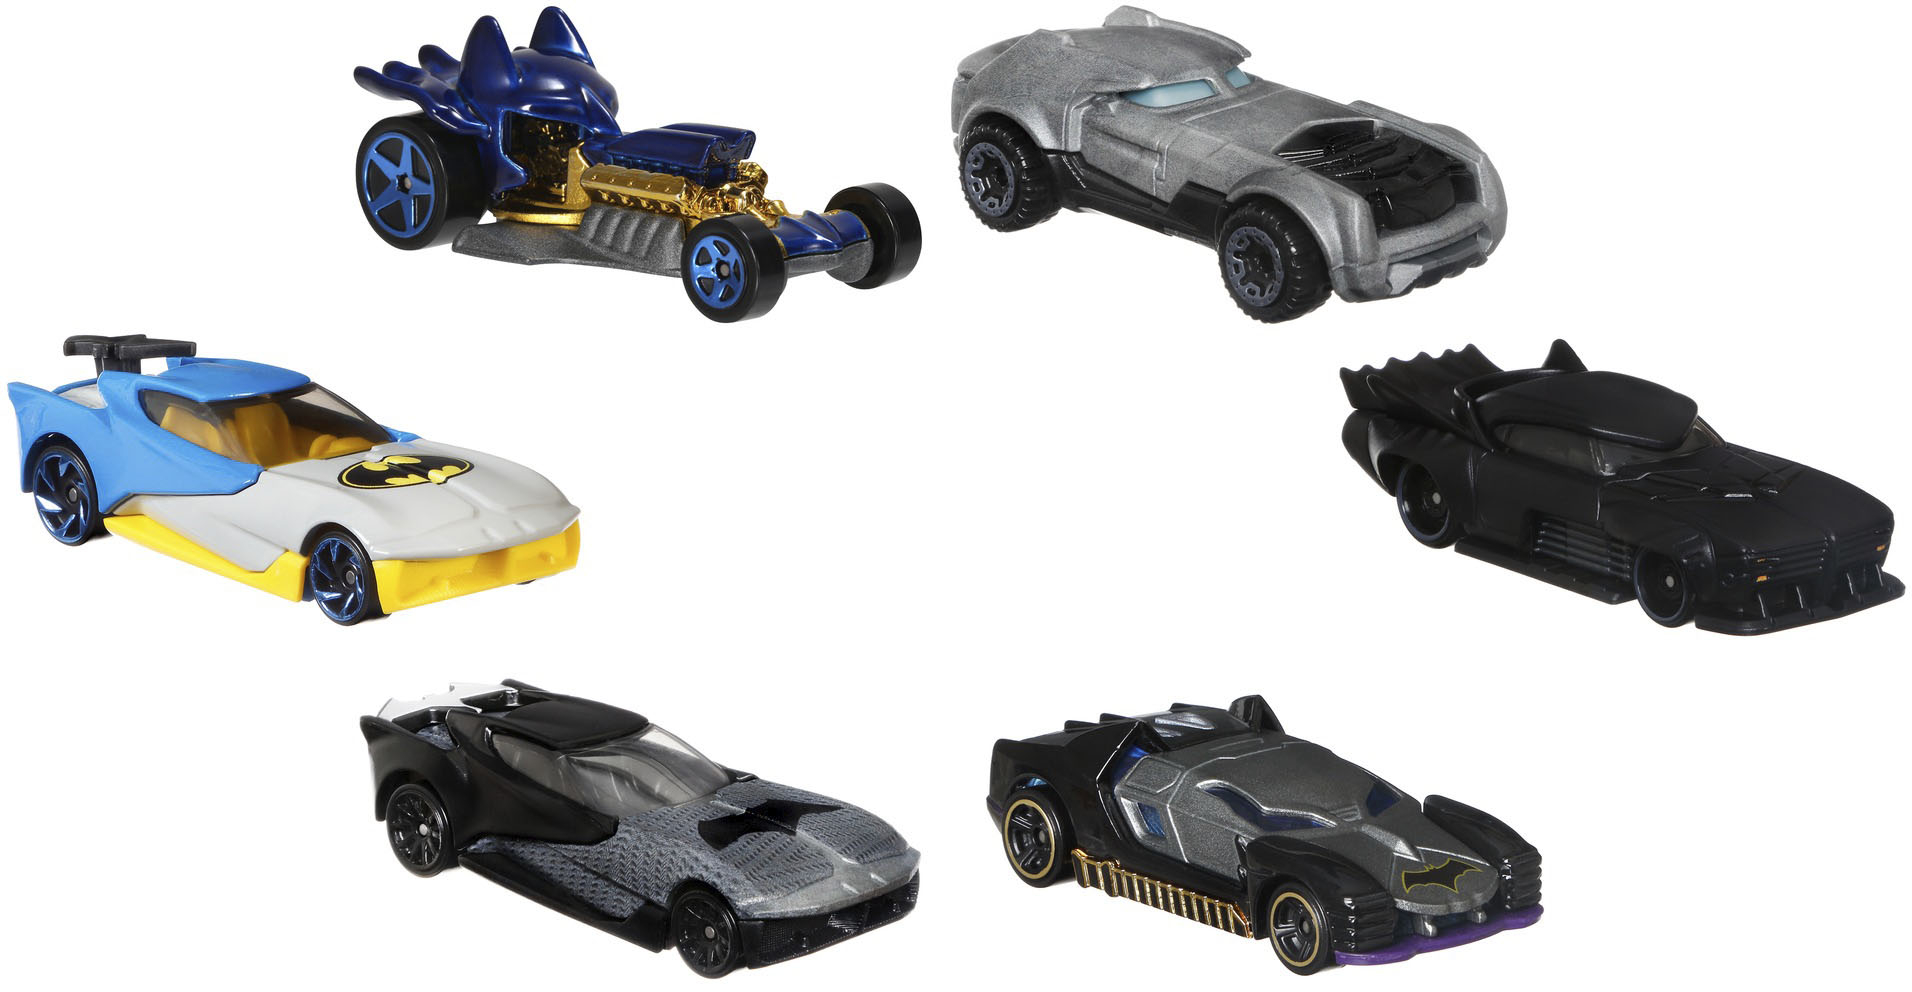 Angle View: Hot Wheels - Batman Character Car, 6 pack